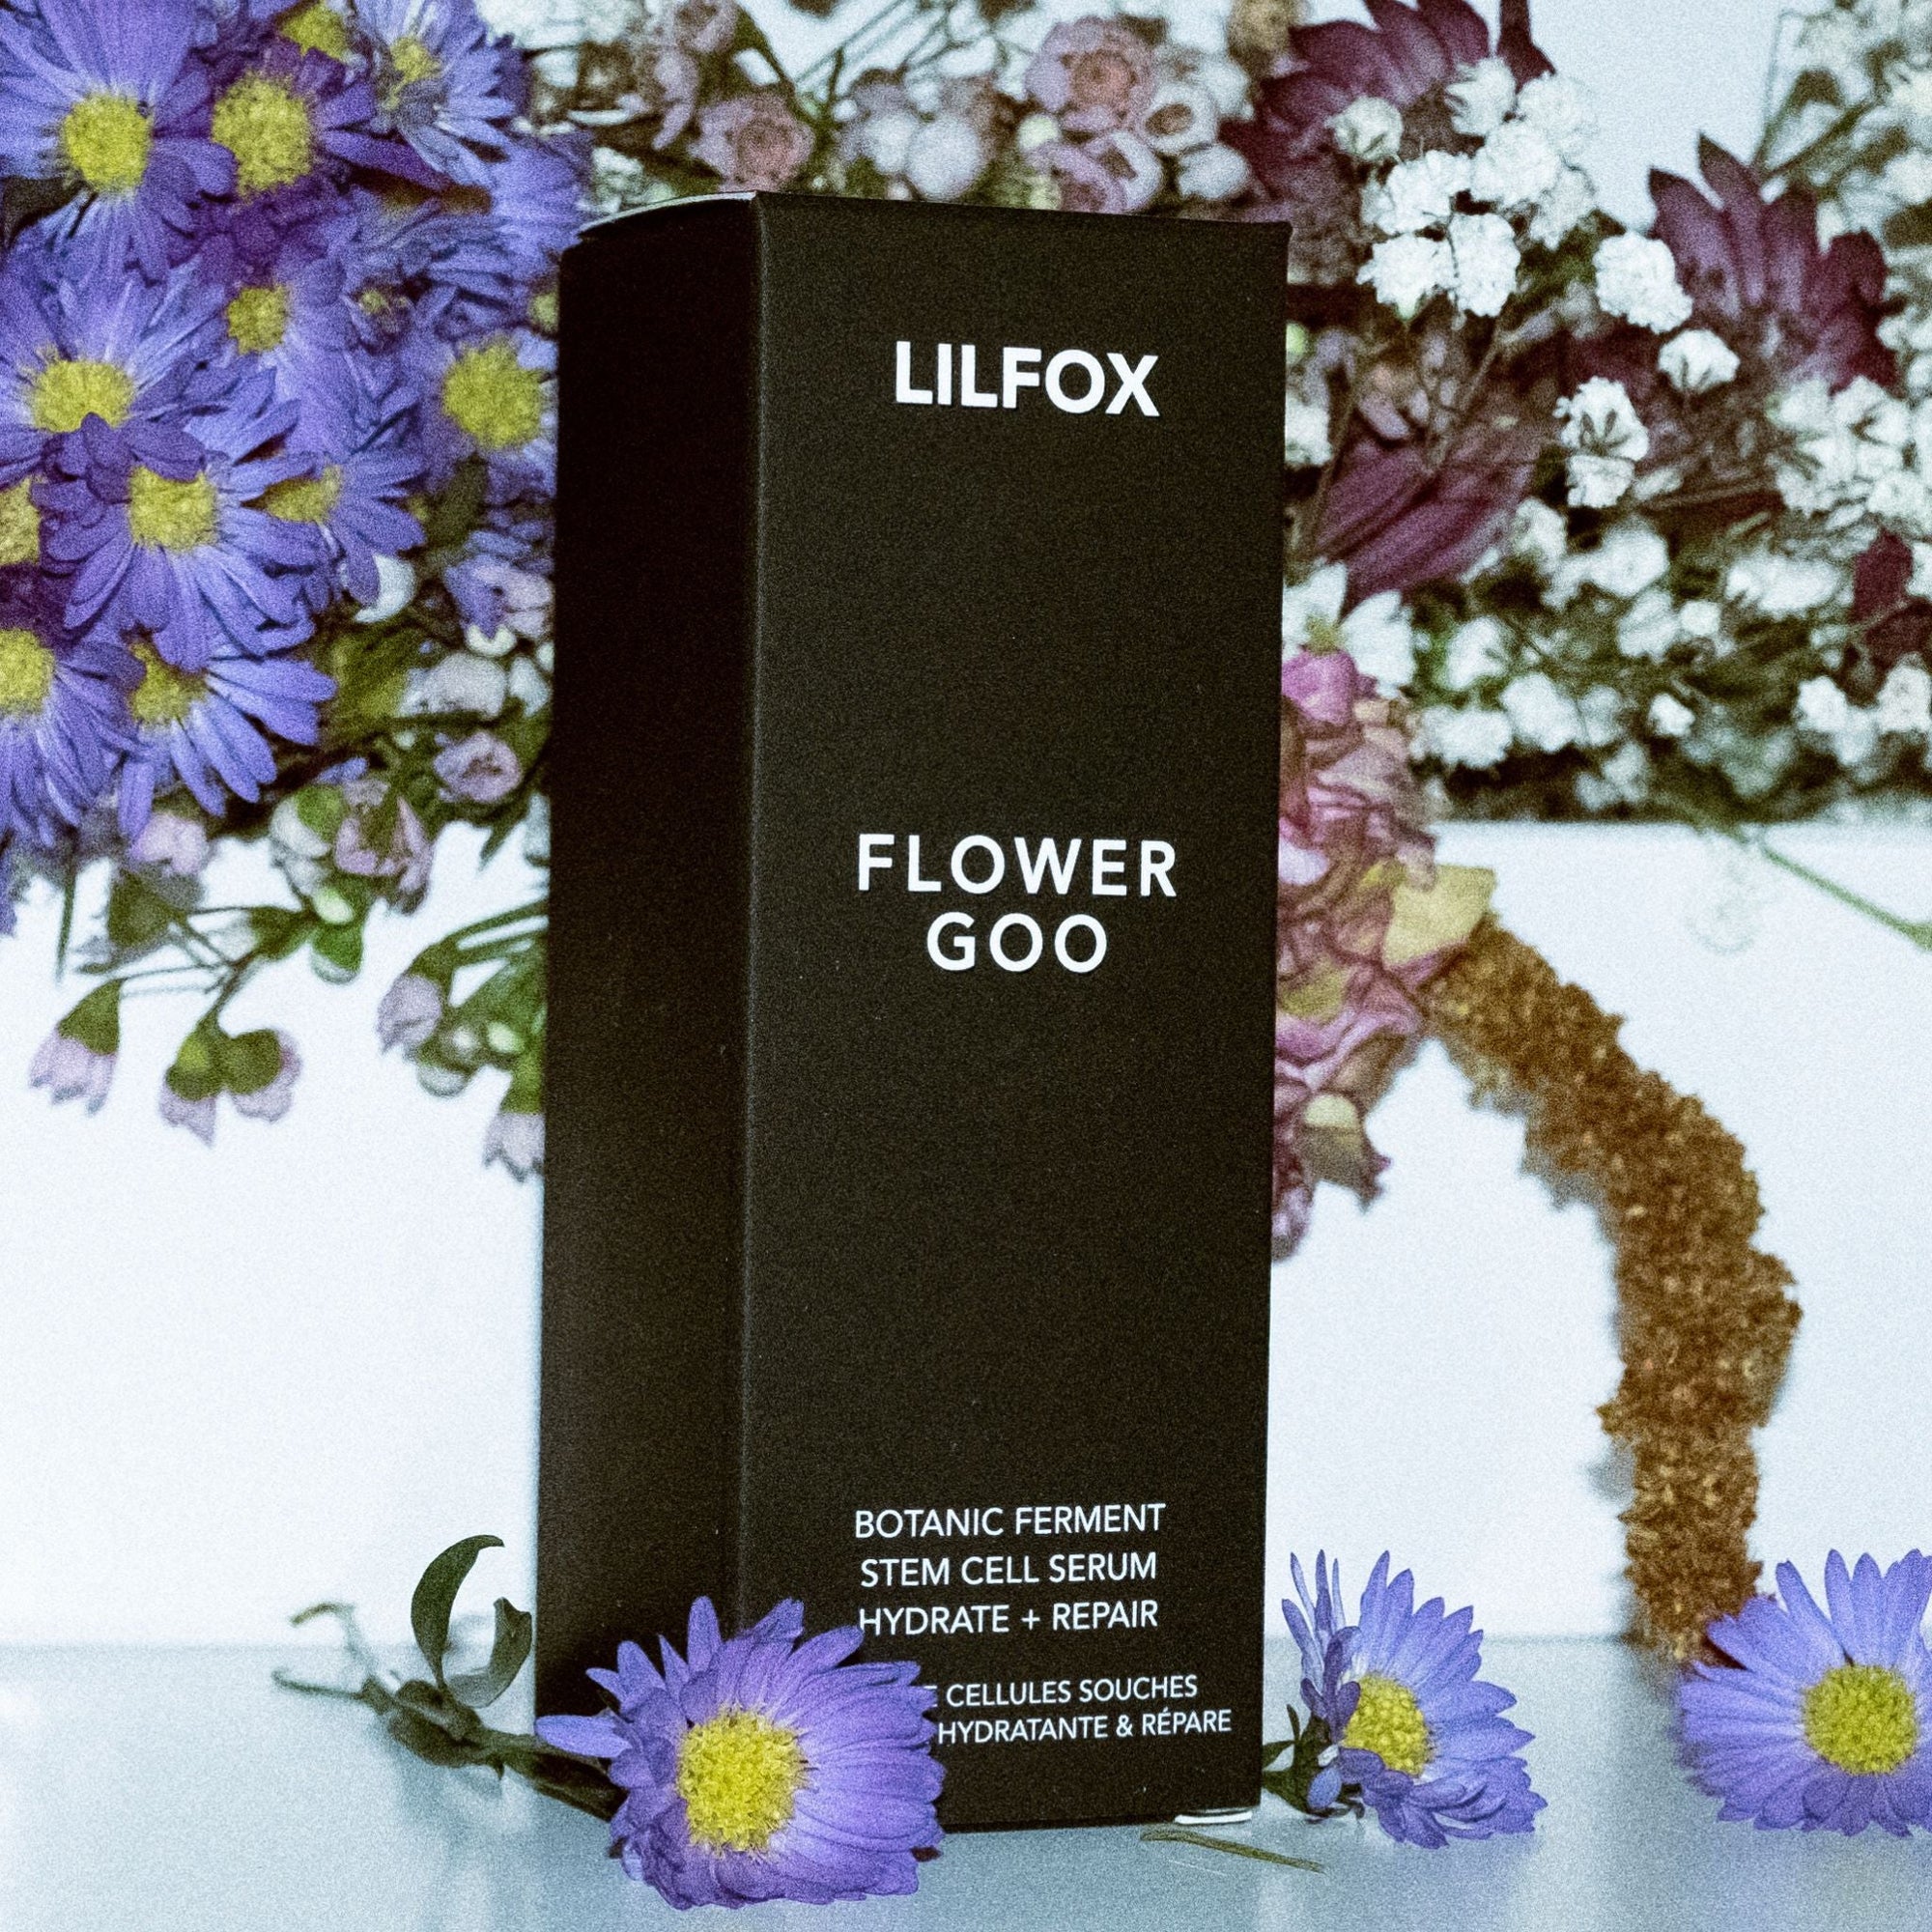 Lilfox - LILFOX Flower Goo Botanic Ferment Stem Cell Serum - ORESTA clean beauty simplified